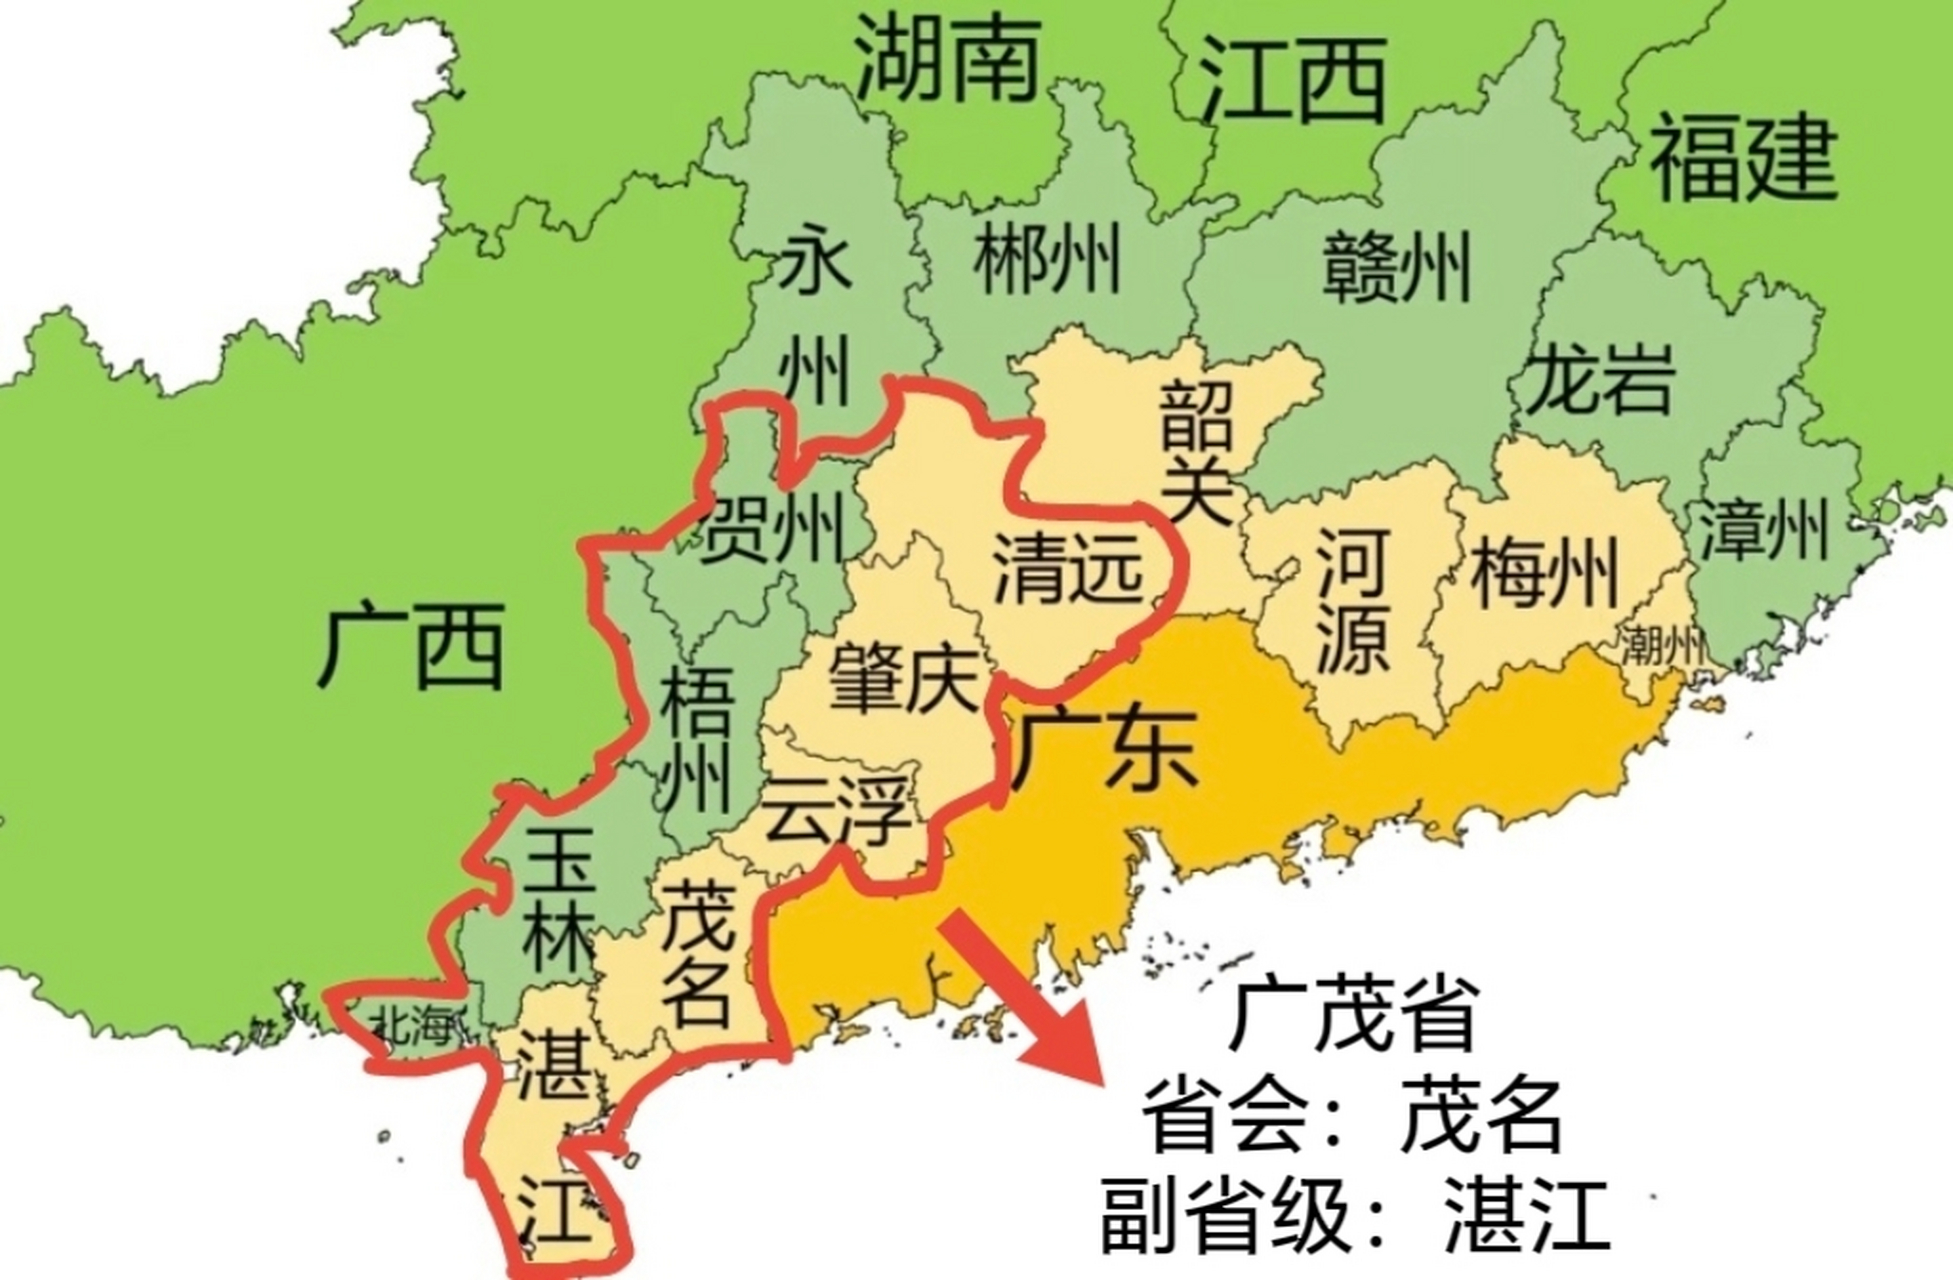 其实粤西和广西东部可以组成广茂省,省会放在综合性城市茂名,湛江为